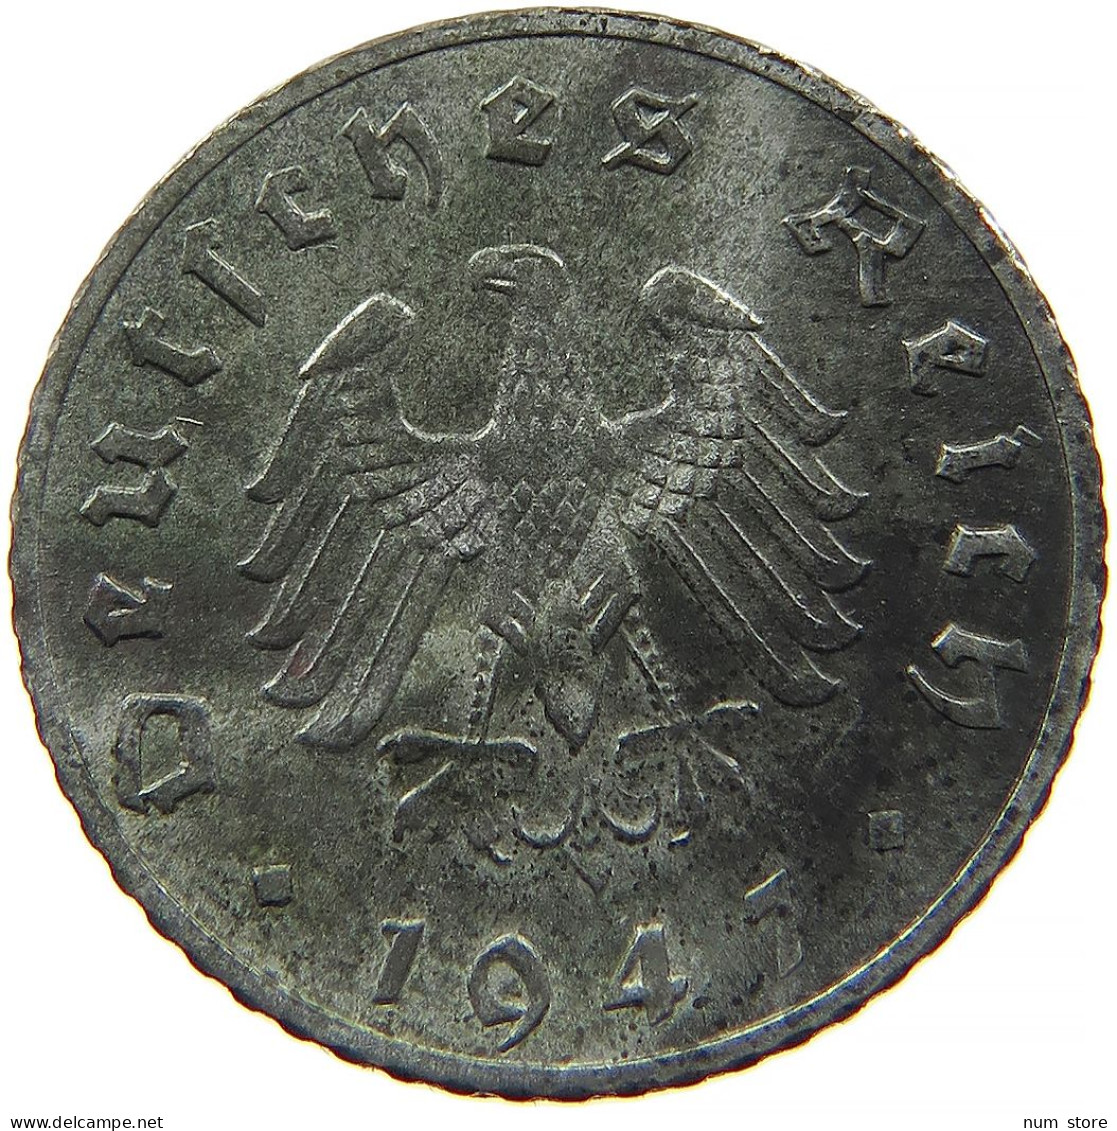 ALLIIERTE BESETZUNG 5 REICHSPFENNIG 1947 A  #t028 0373 - 5 Reichspfennig